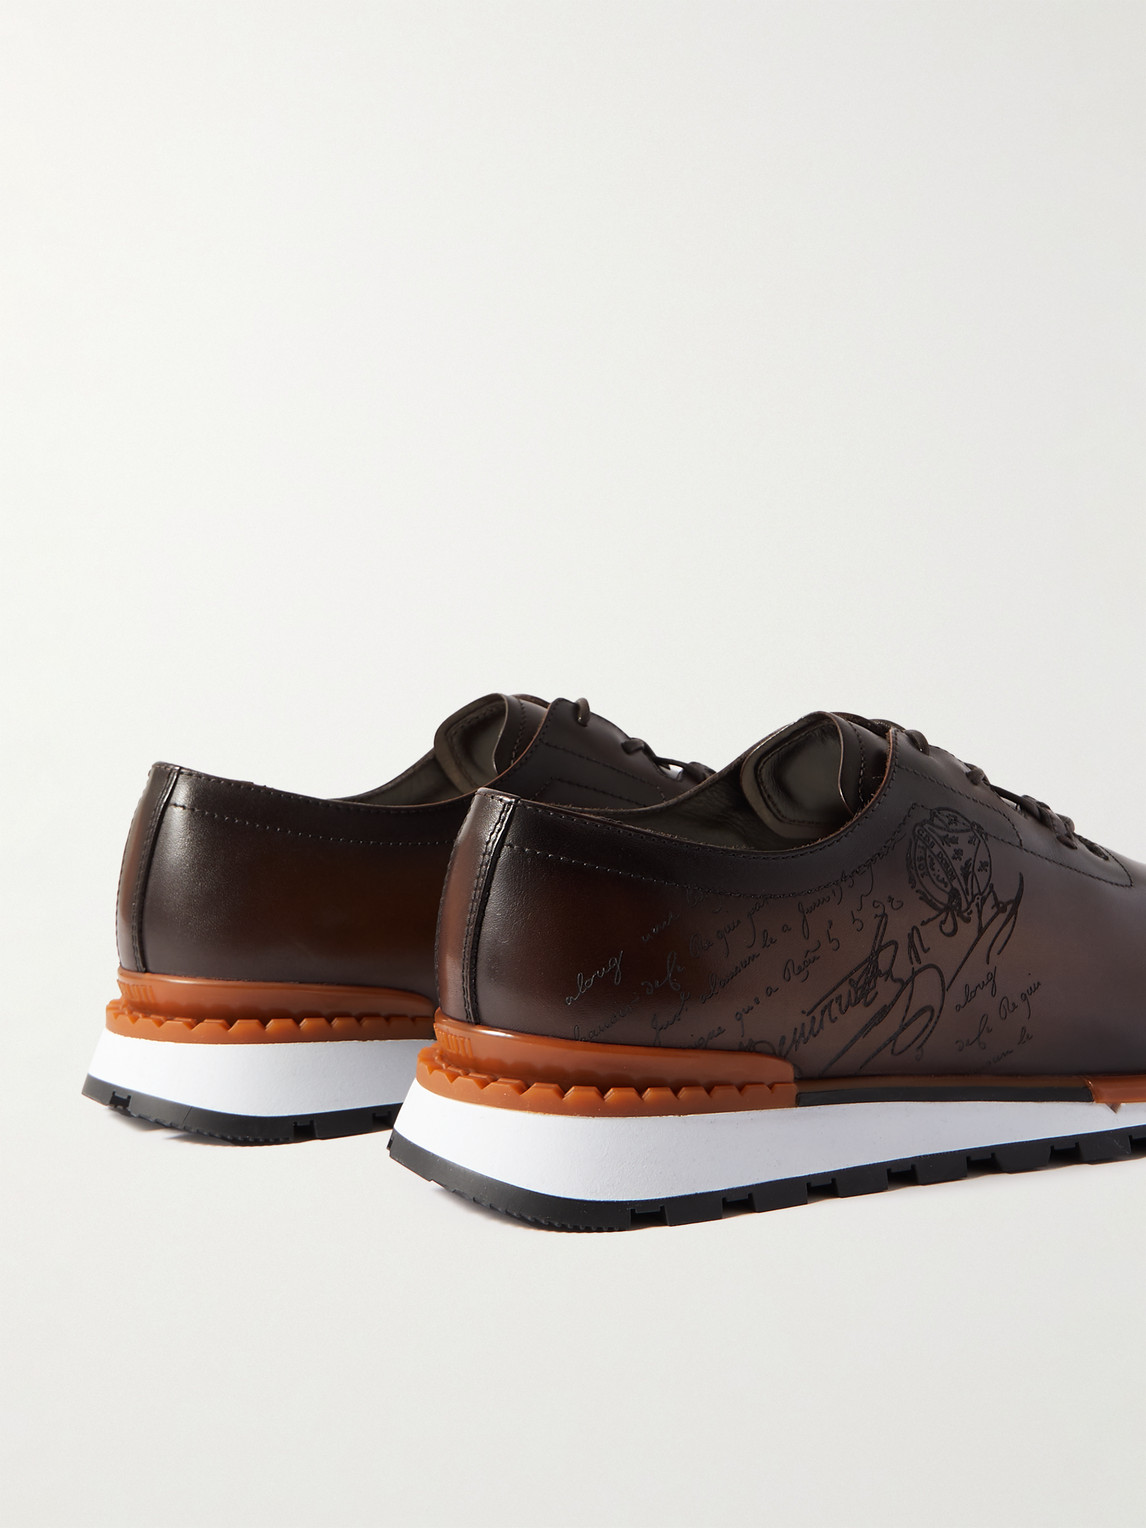 Shop Berluti Fast Track Scritto Venezia Leather Sneakers In Brown